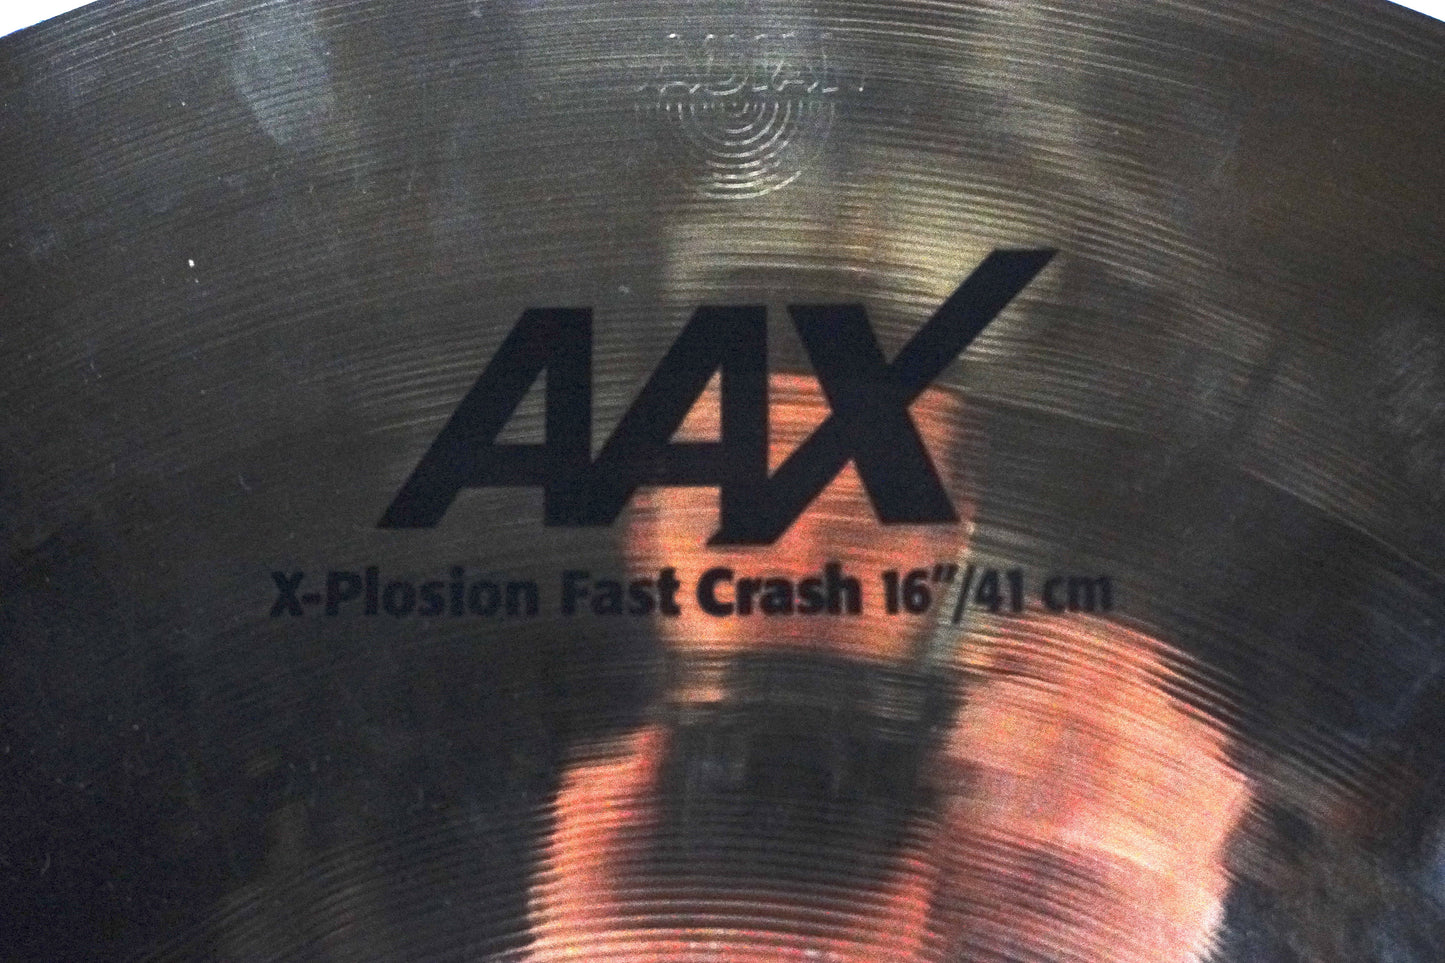 Sabian 16” AAX-Plosion Crash Cymbal